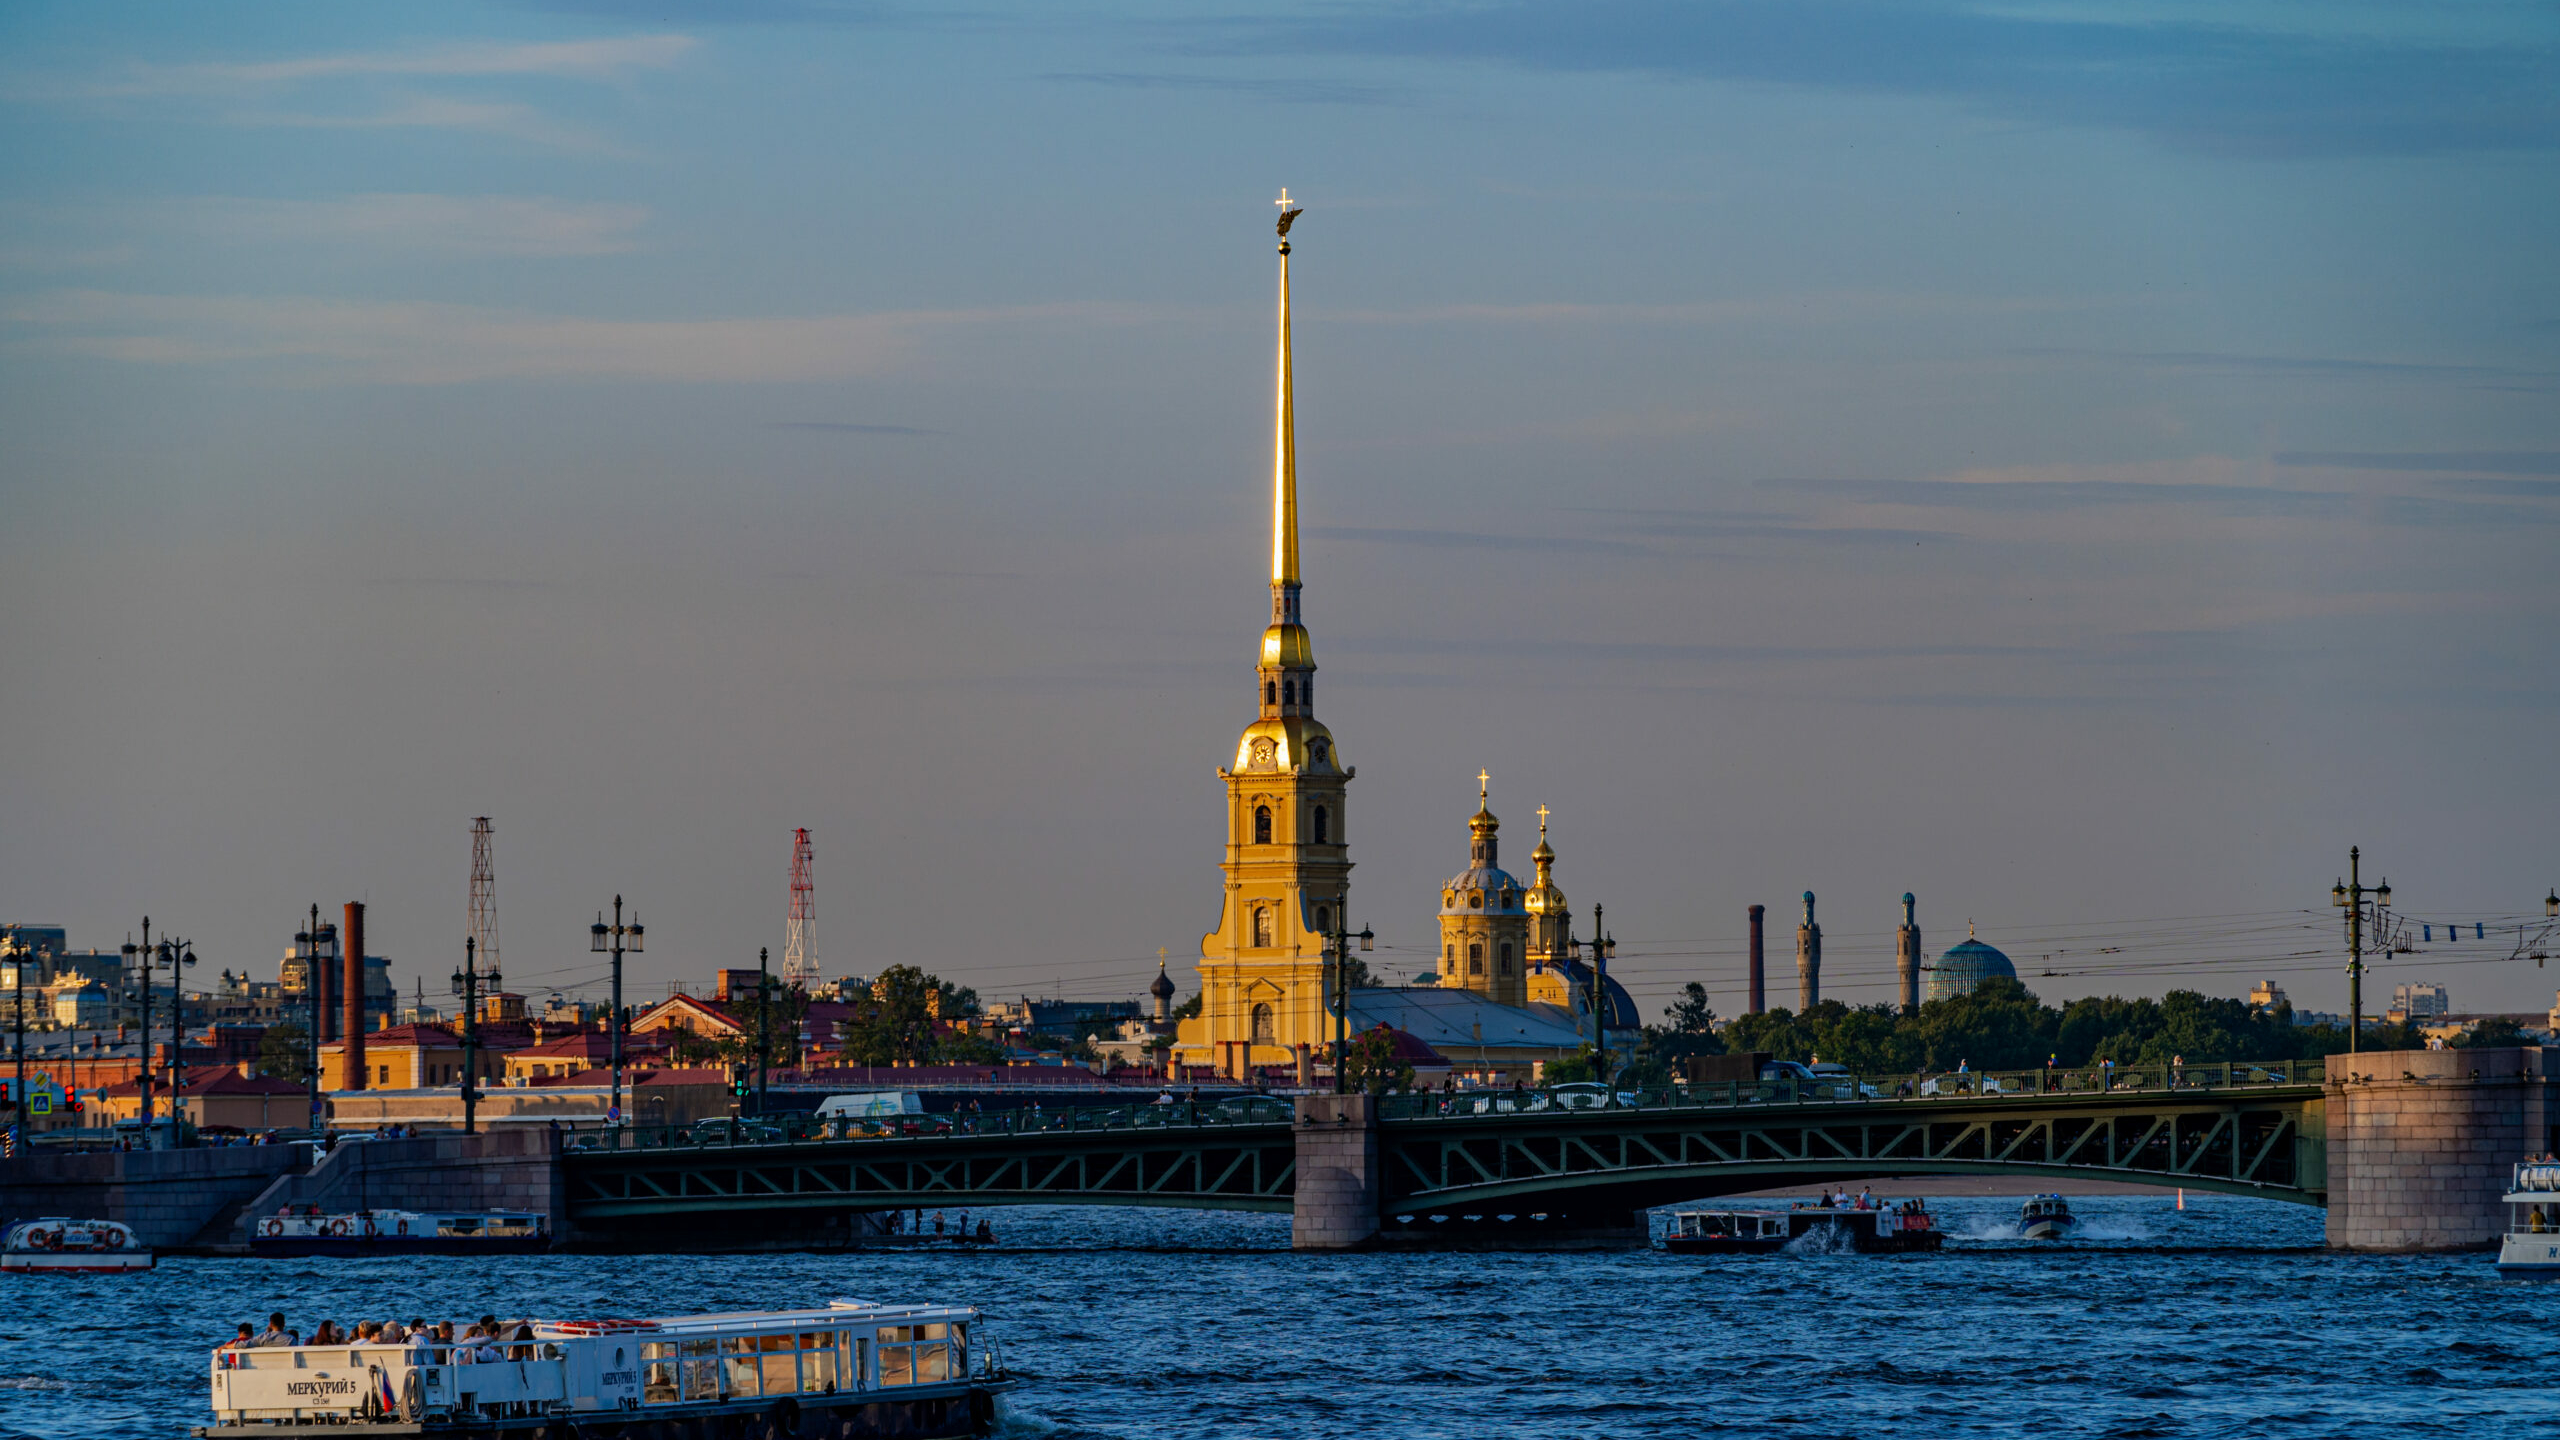 Реставрация Петропавловской крепости затягивается из-за непредвиденных проблем